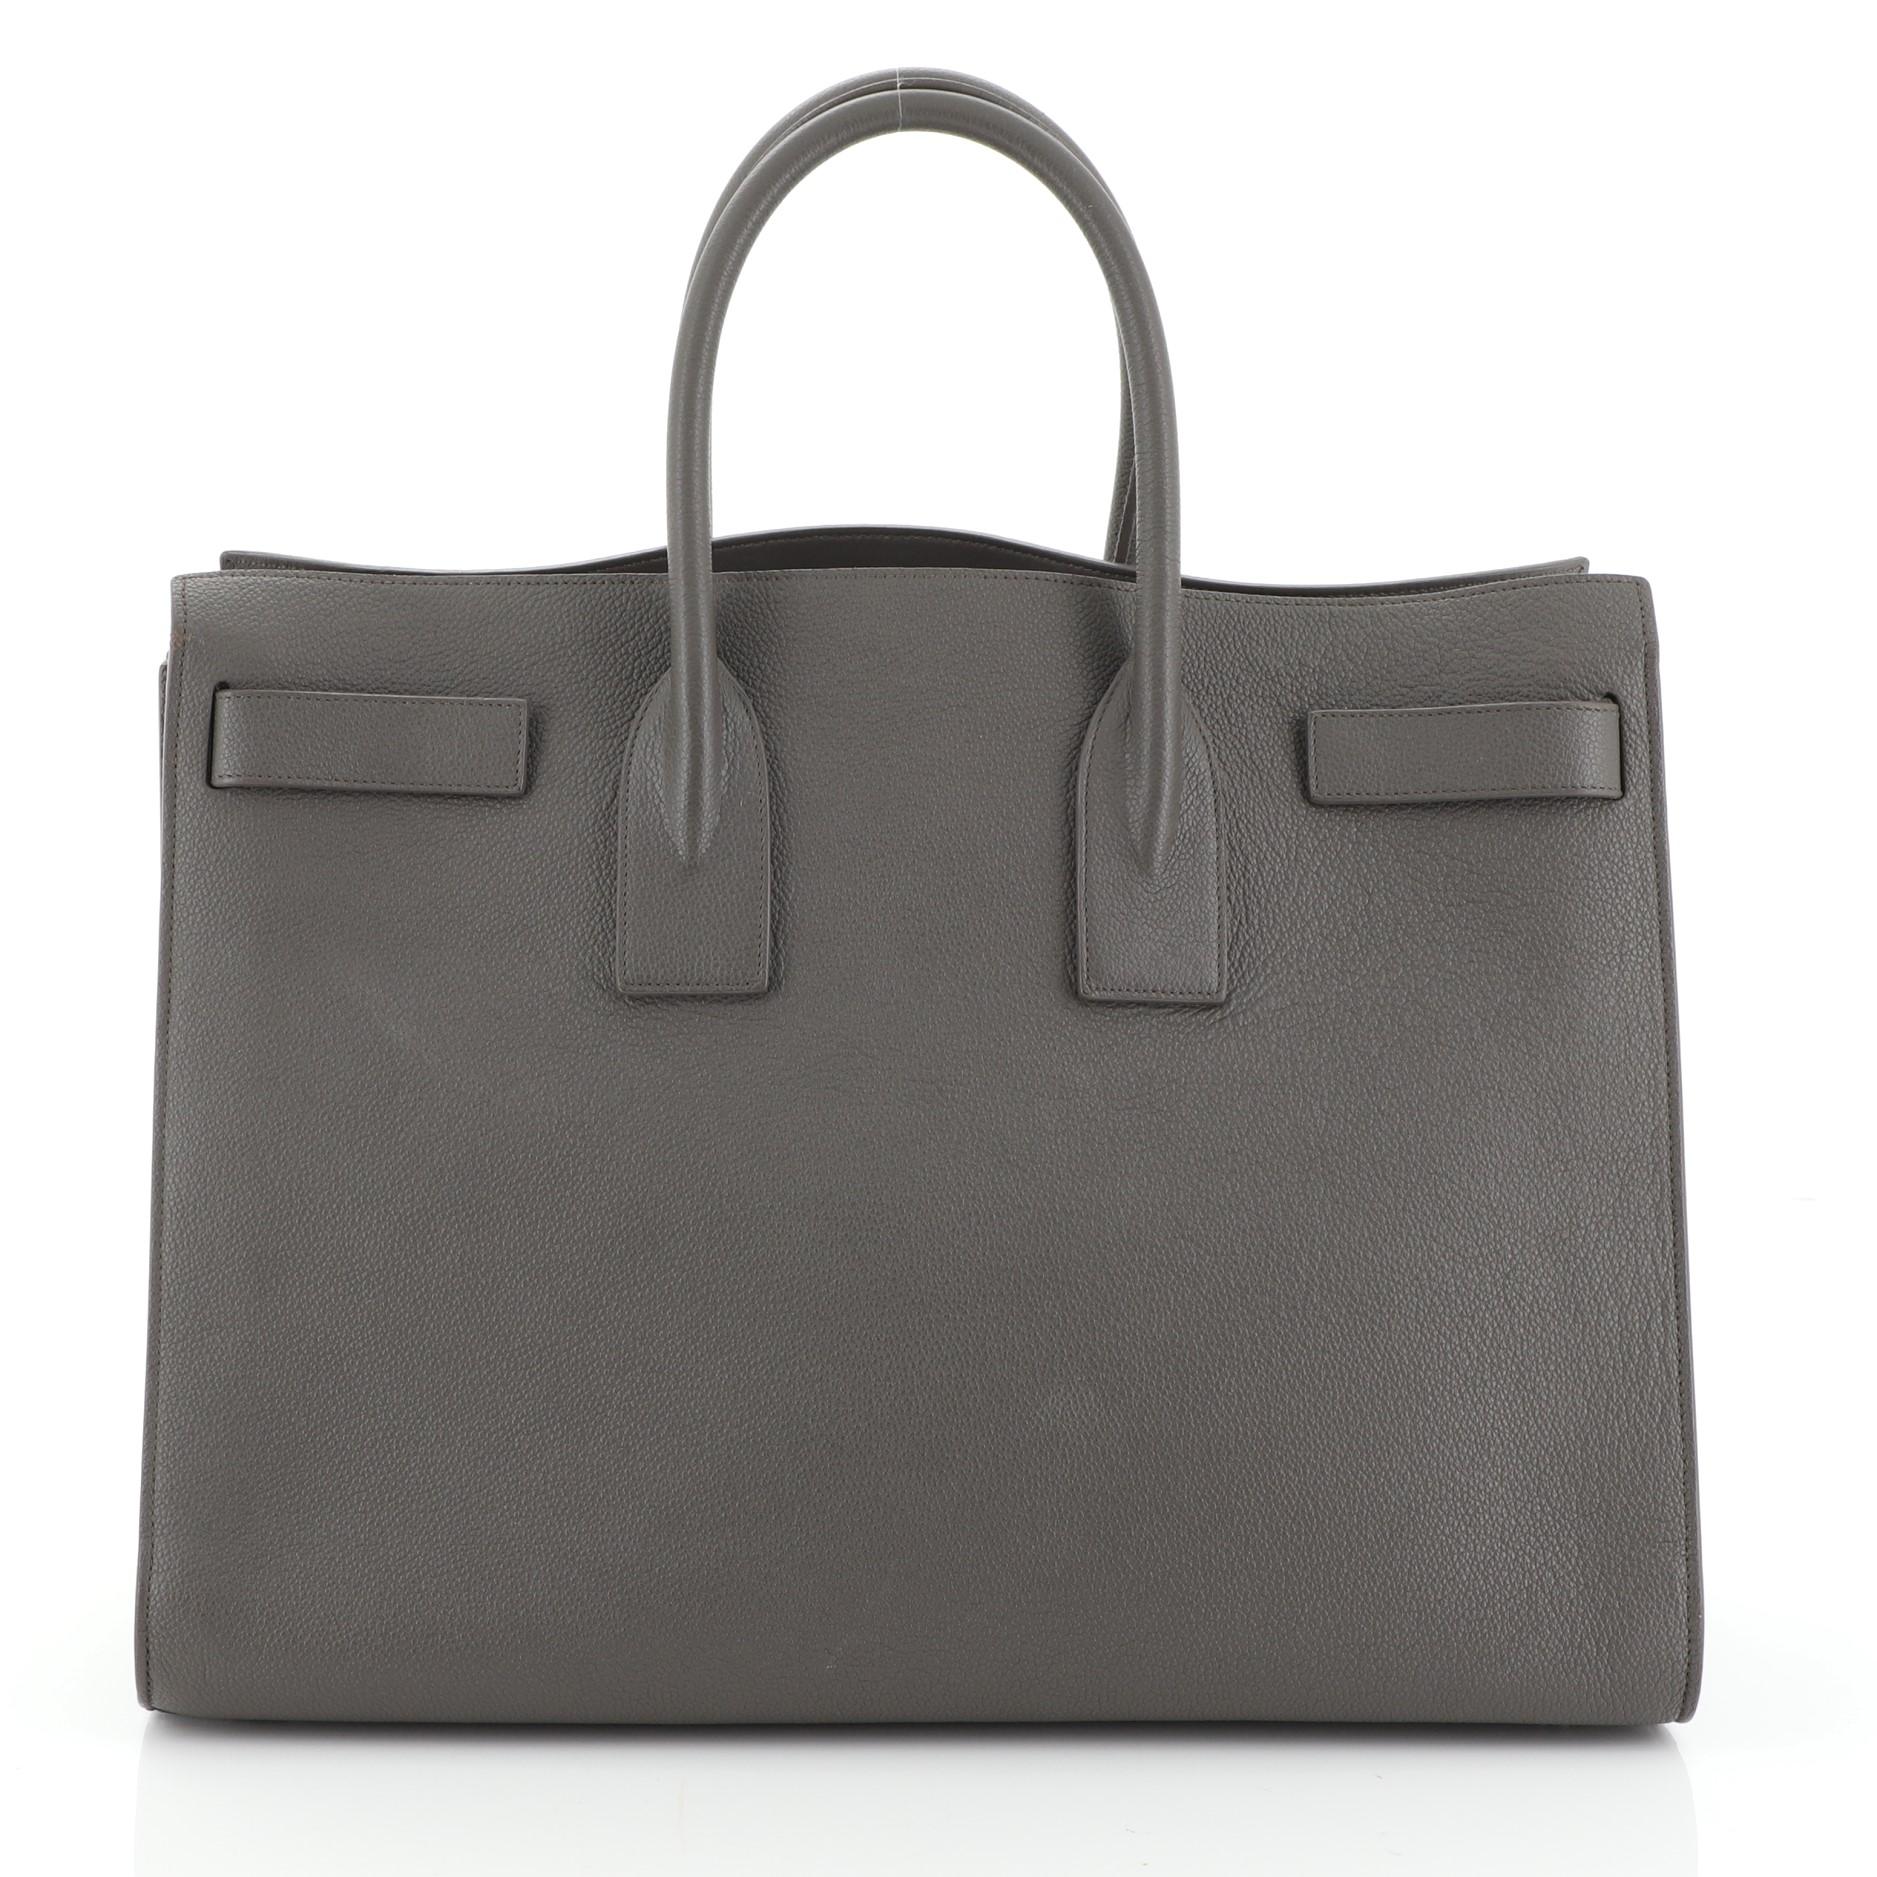 Gray Saint Laurent Sac de Jour Carryall NM Bag Leather Large